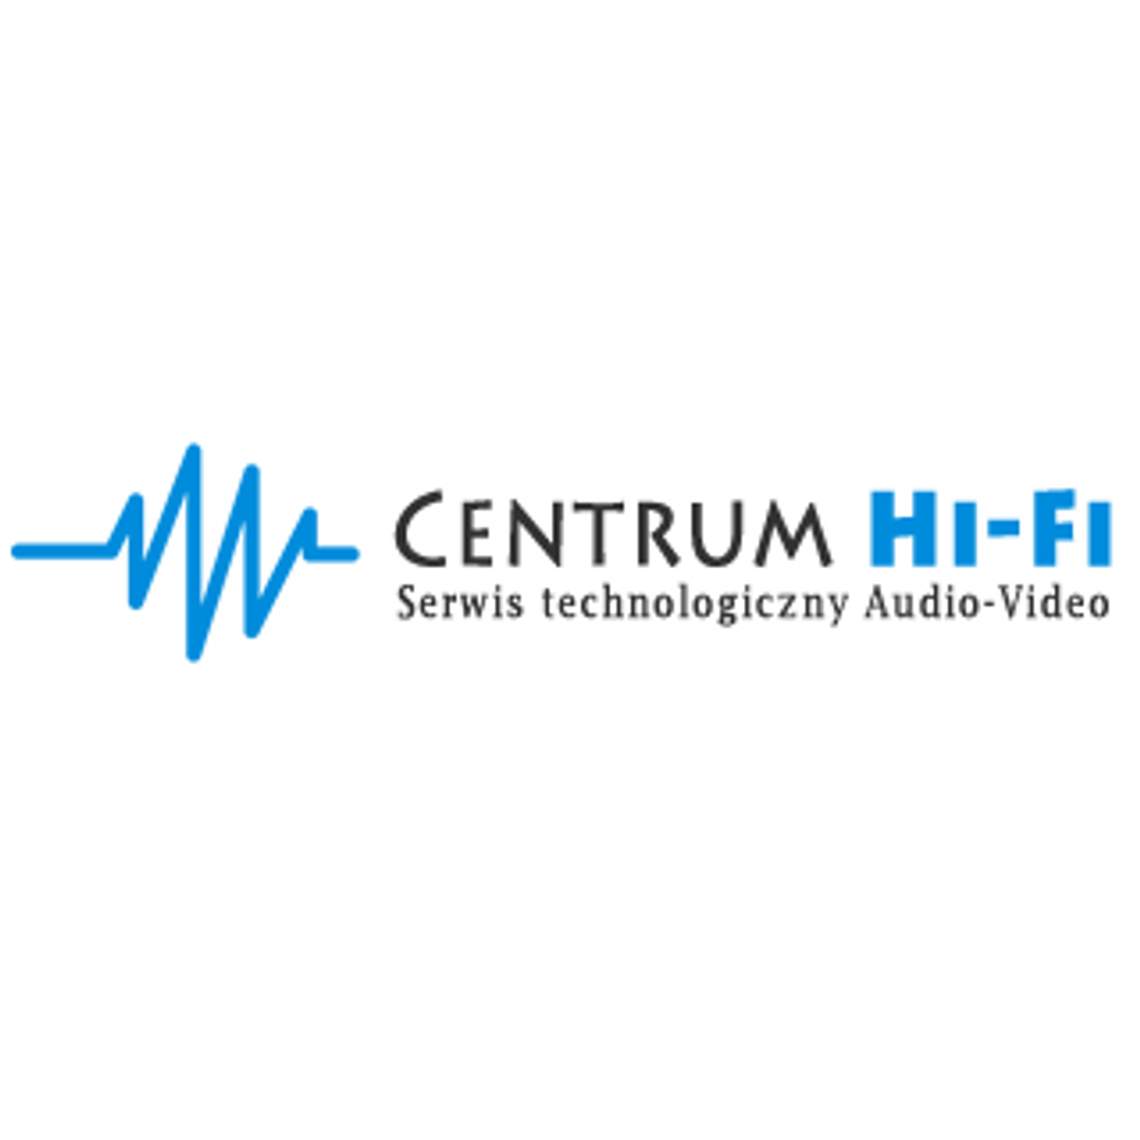 Centrum Hi-Fi